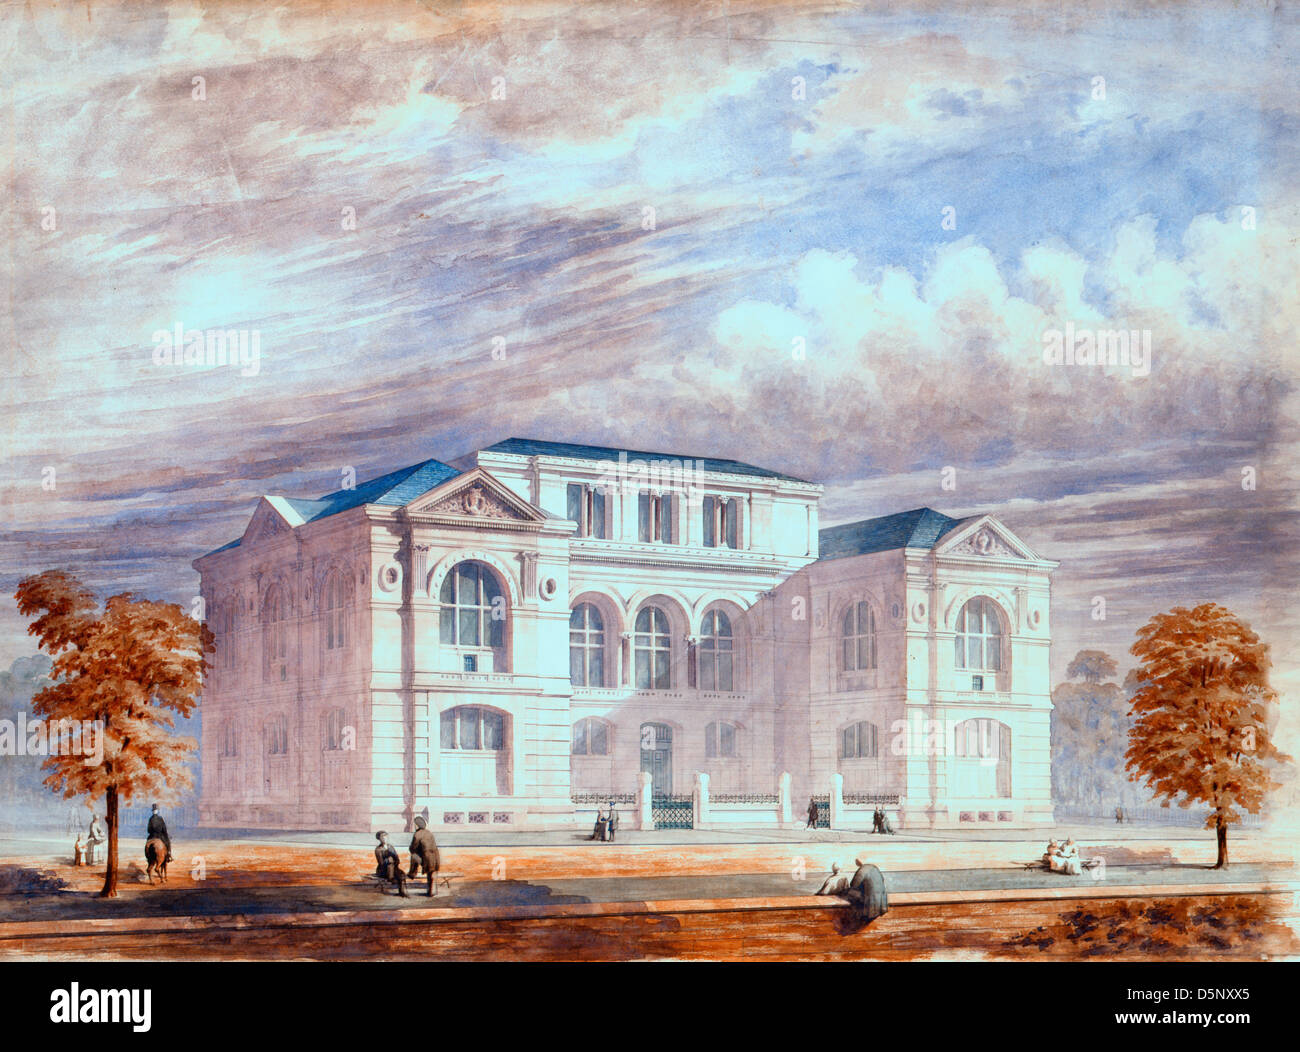 Lenox Library, New York City. Perspektive Rendern - Original architektonische Zeichnung, eine Präsentation rendern, zeigen die Lenox Library auf der Fifth Avenue in Perspektive aus Nordwesten. Stockfoto